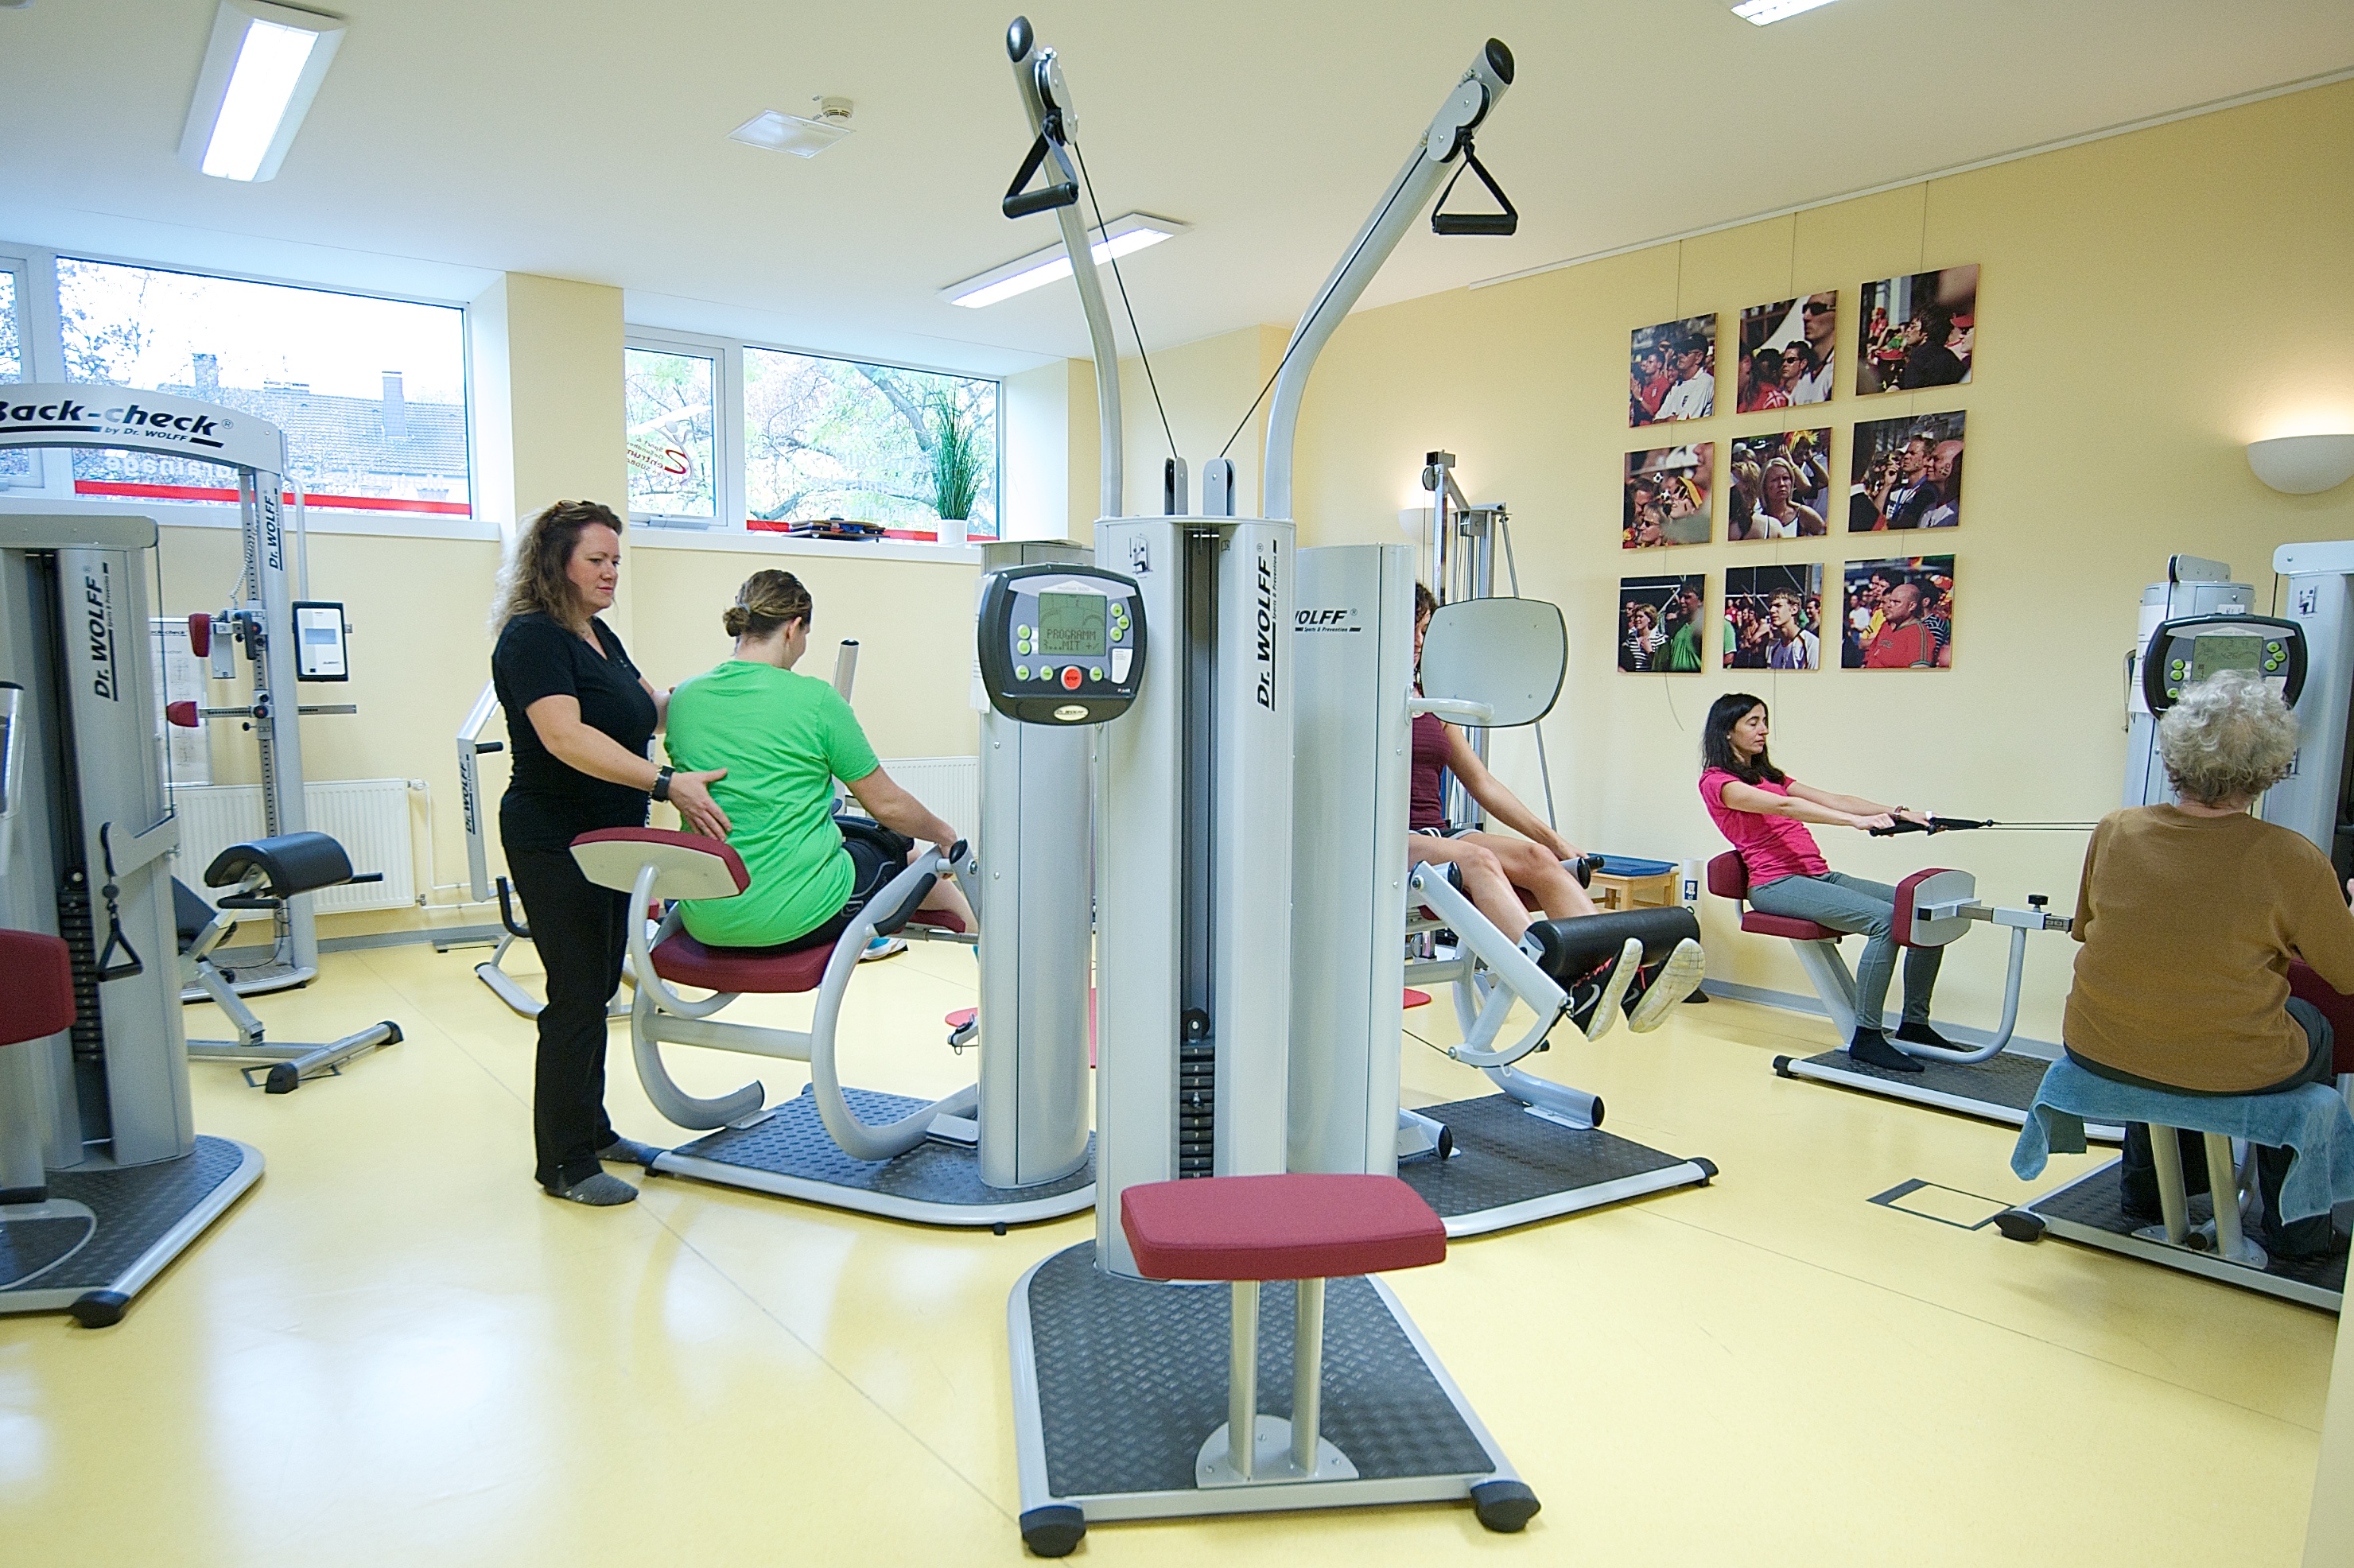 Einblick in einen Fitnessraum mit trainierenden Menschen und einer Physiotherapeutin